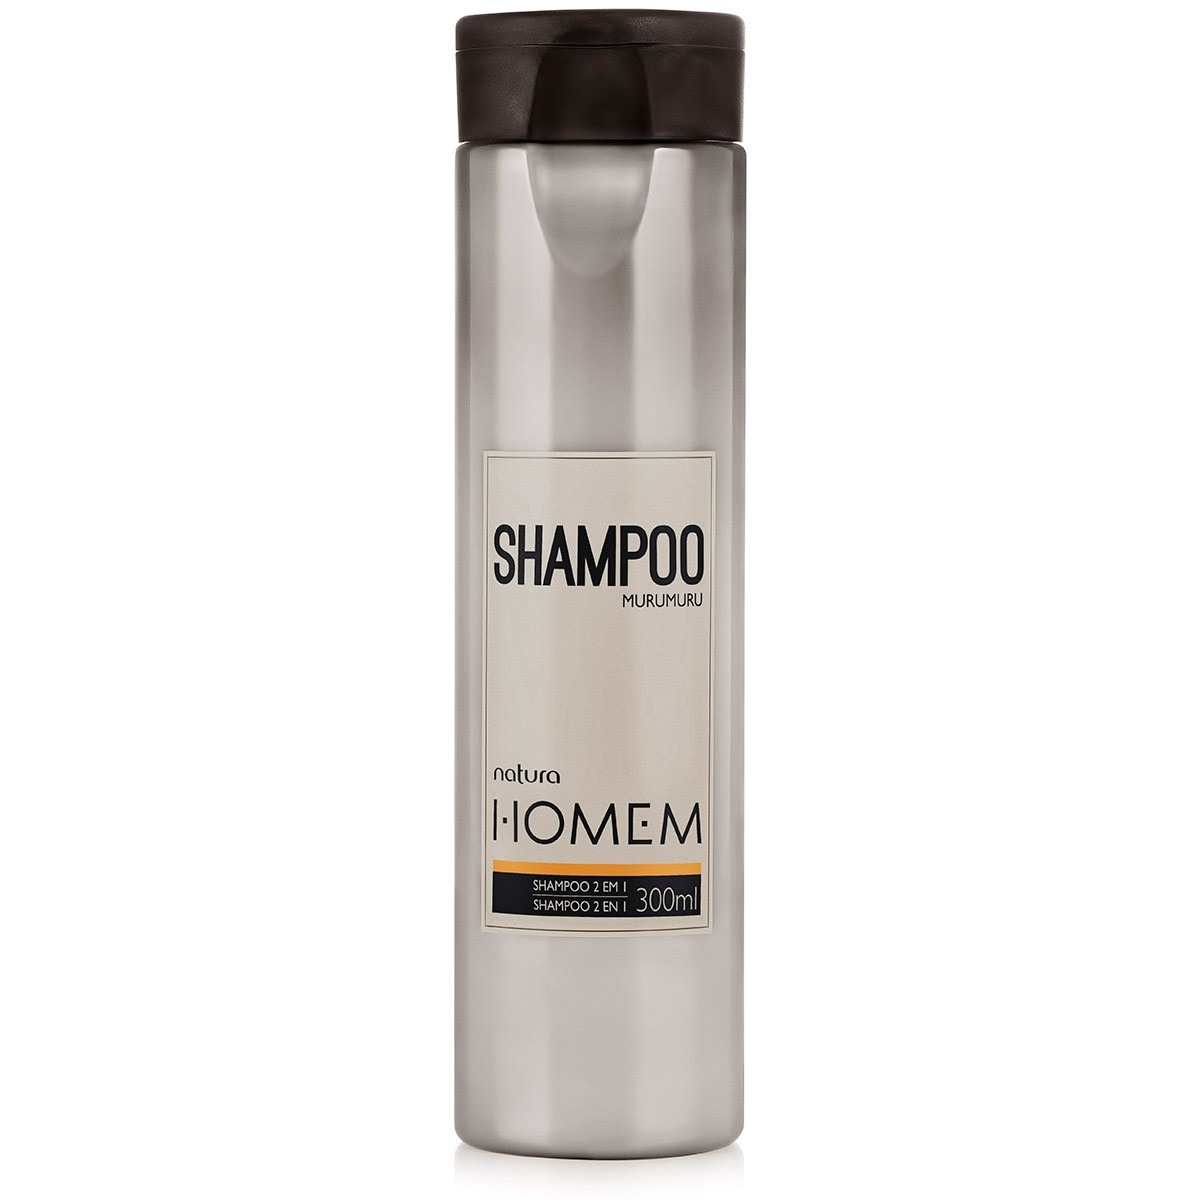 Na Drogaria Lecer voce encontra Shampoo 2 em 1 Natura Homem 300ml com